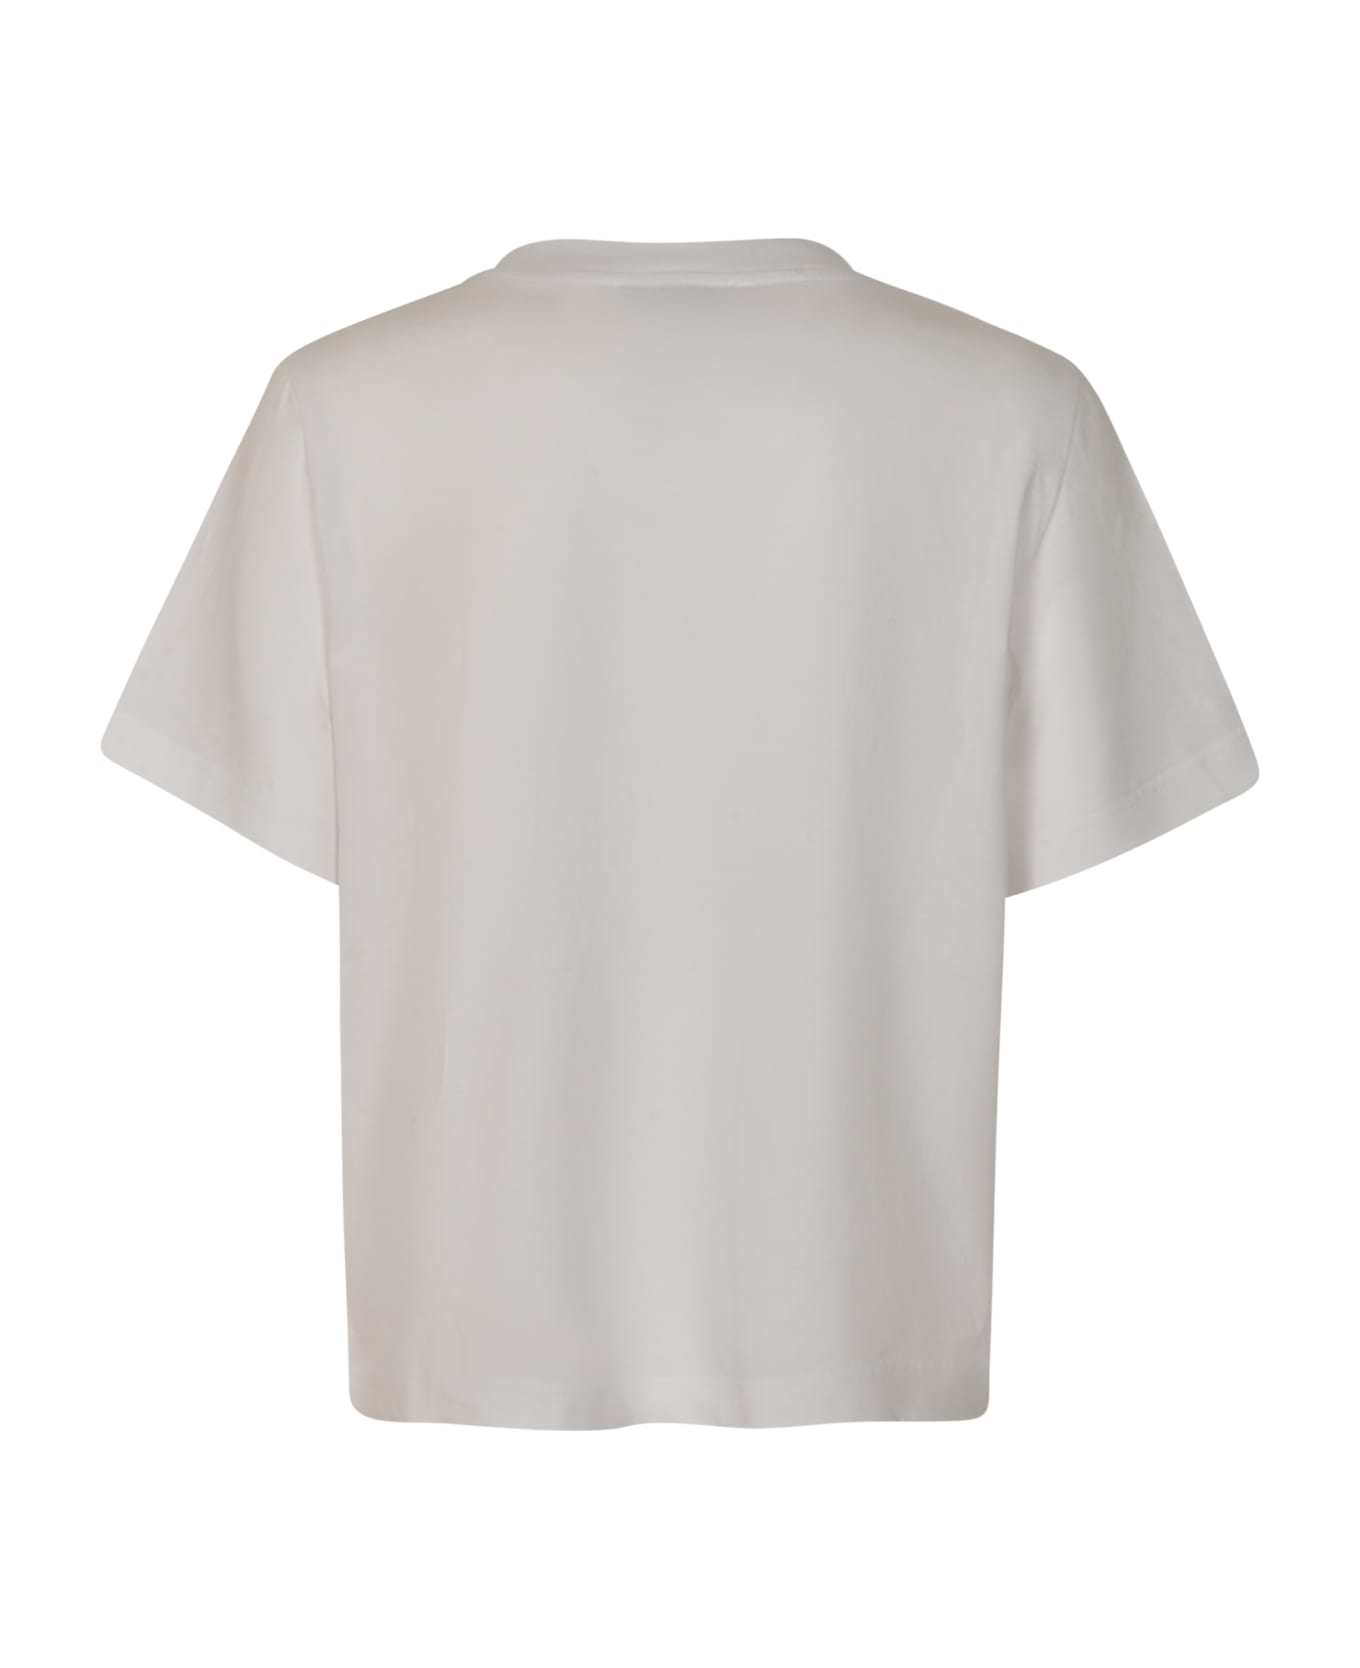 VIS A VIS Round Neck T-shirt - White Tシャツ